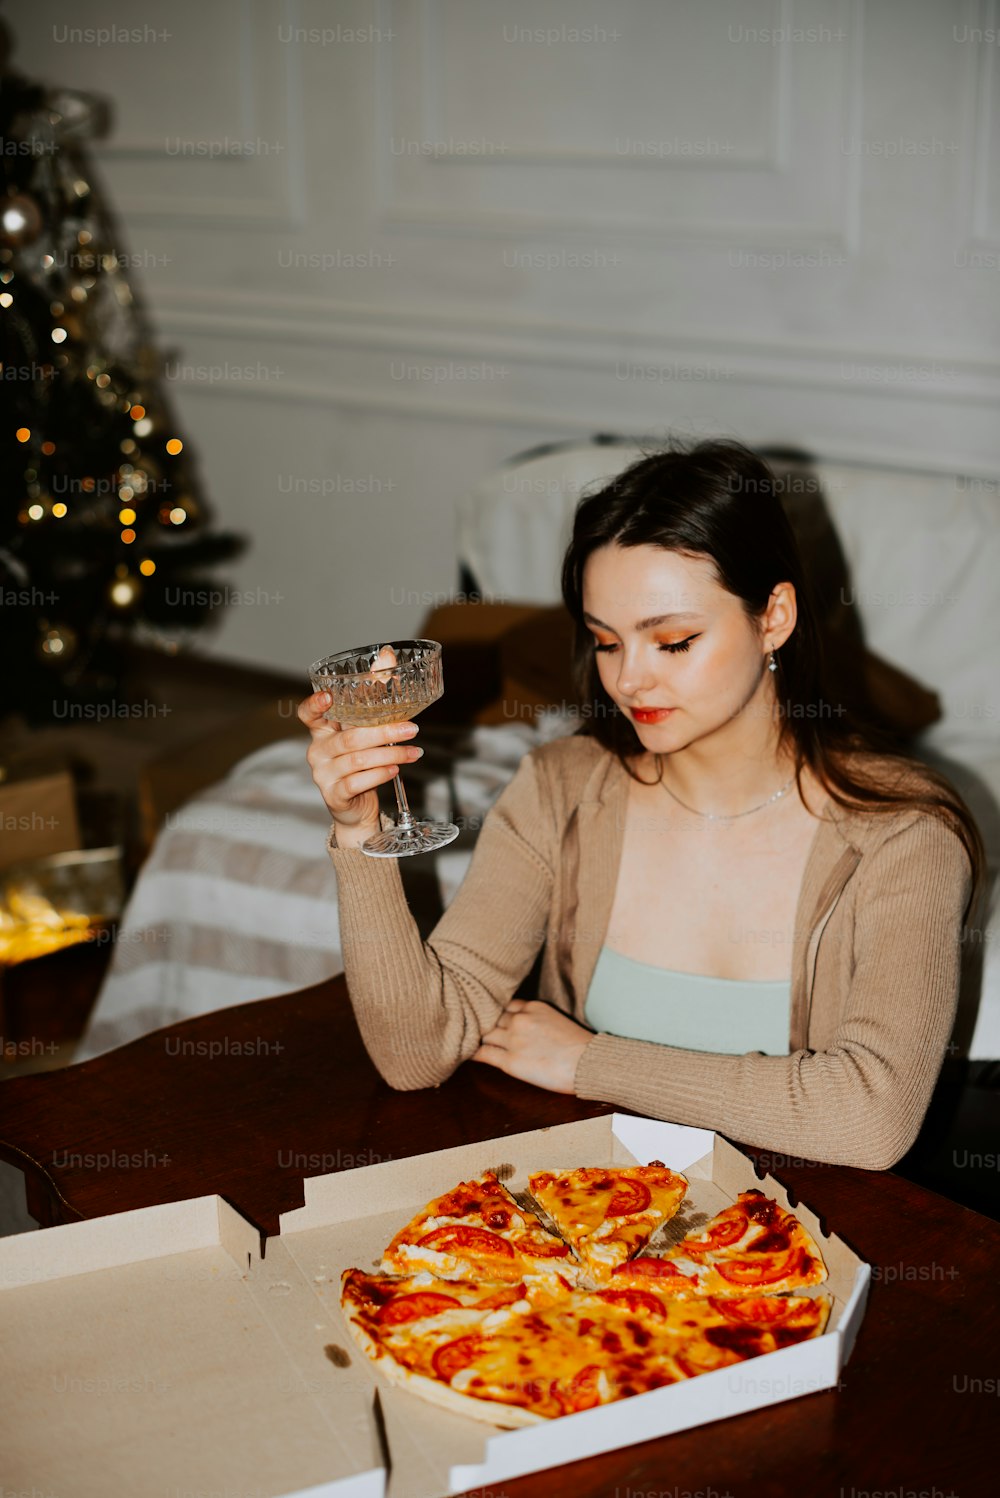 Una mujer sentada en una mesa con una pizza frente a ella